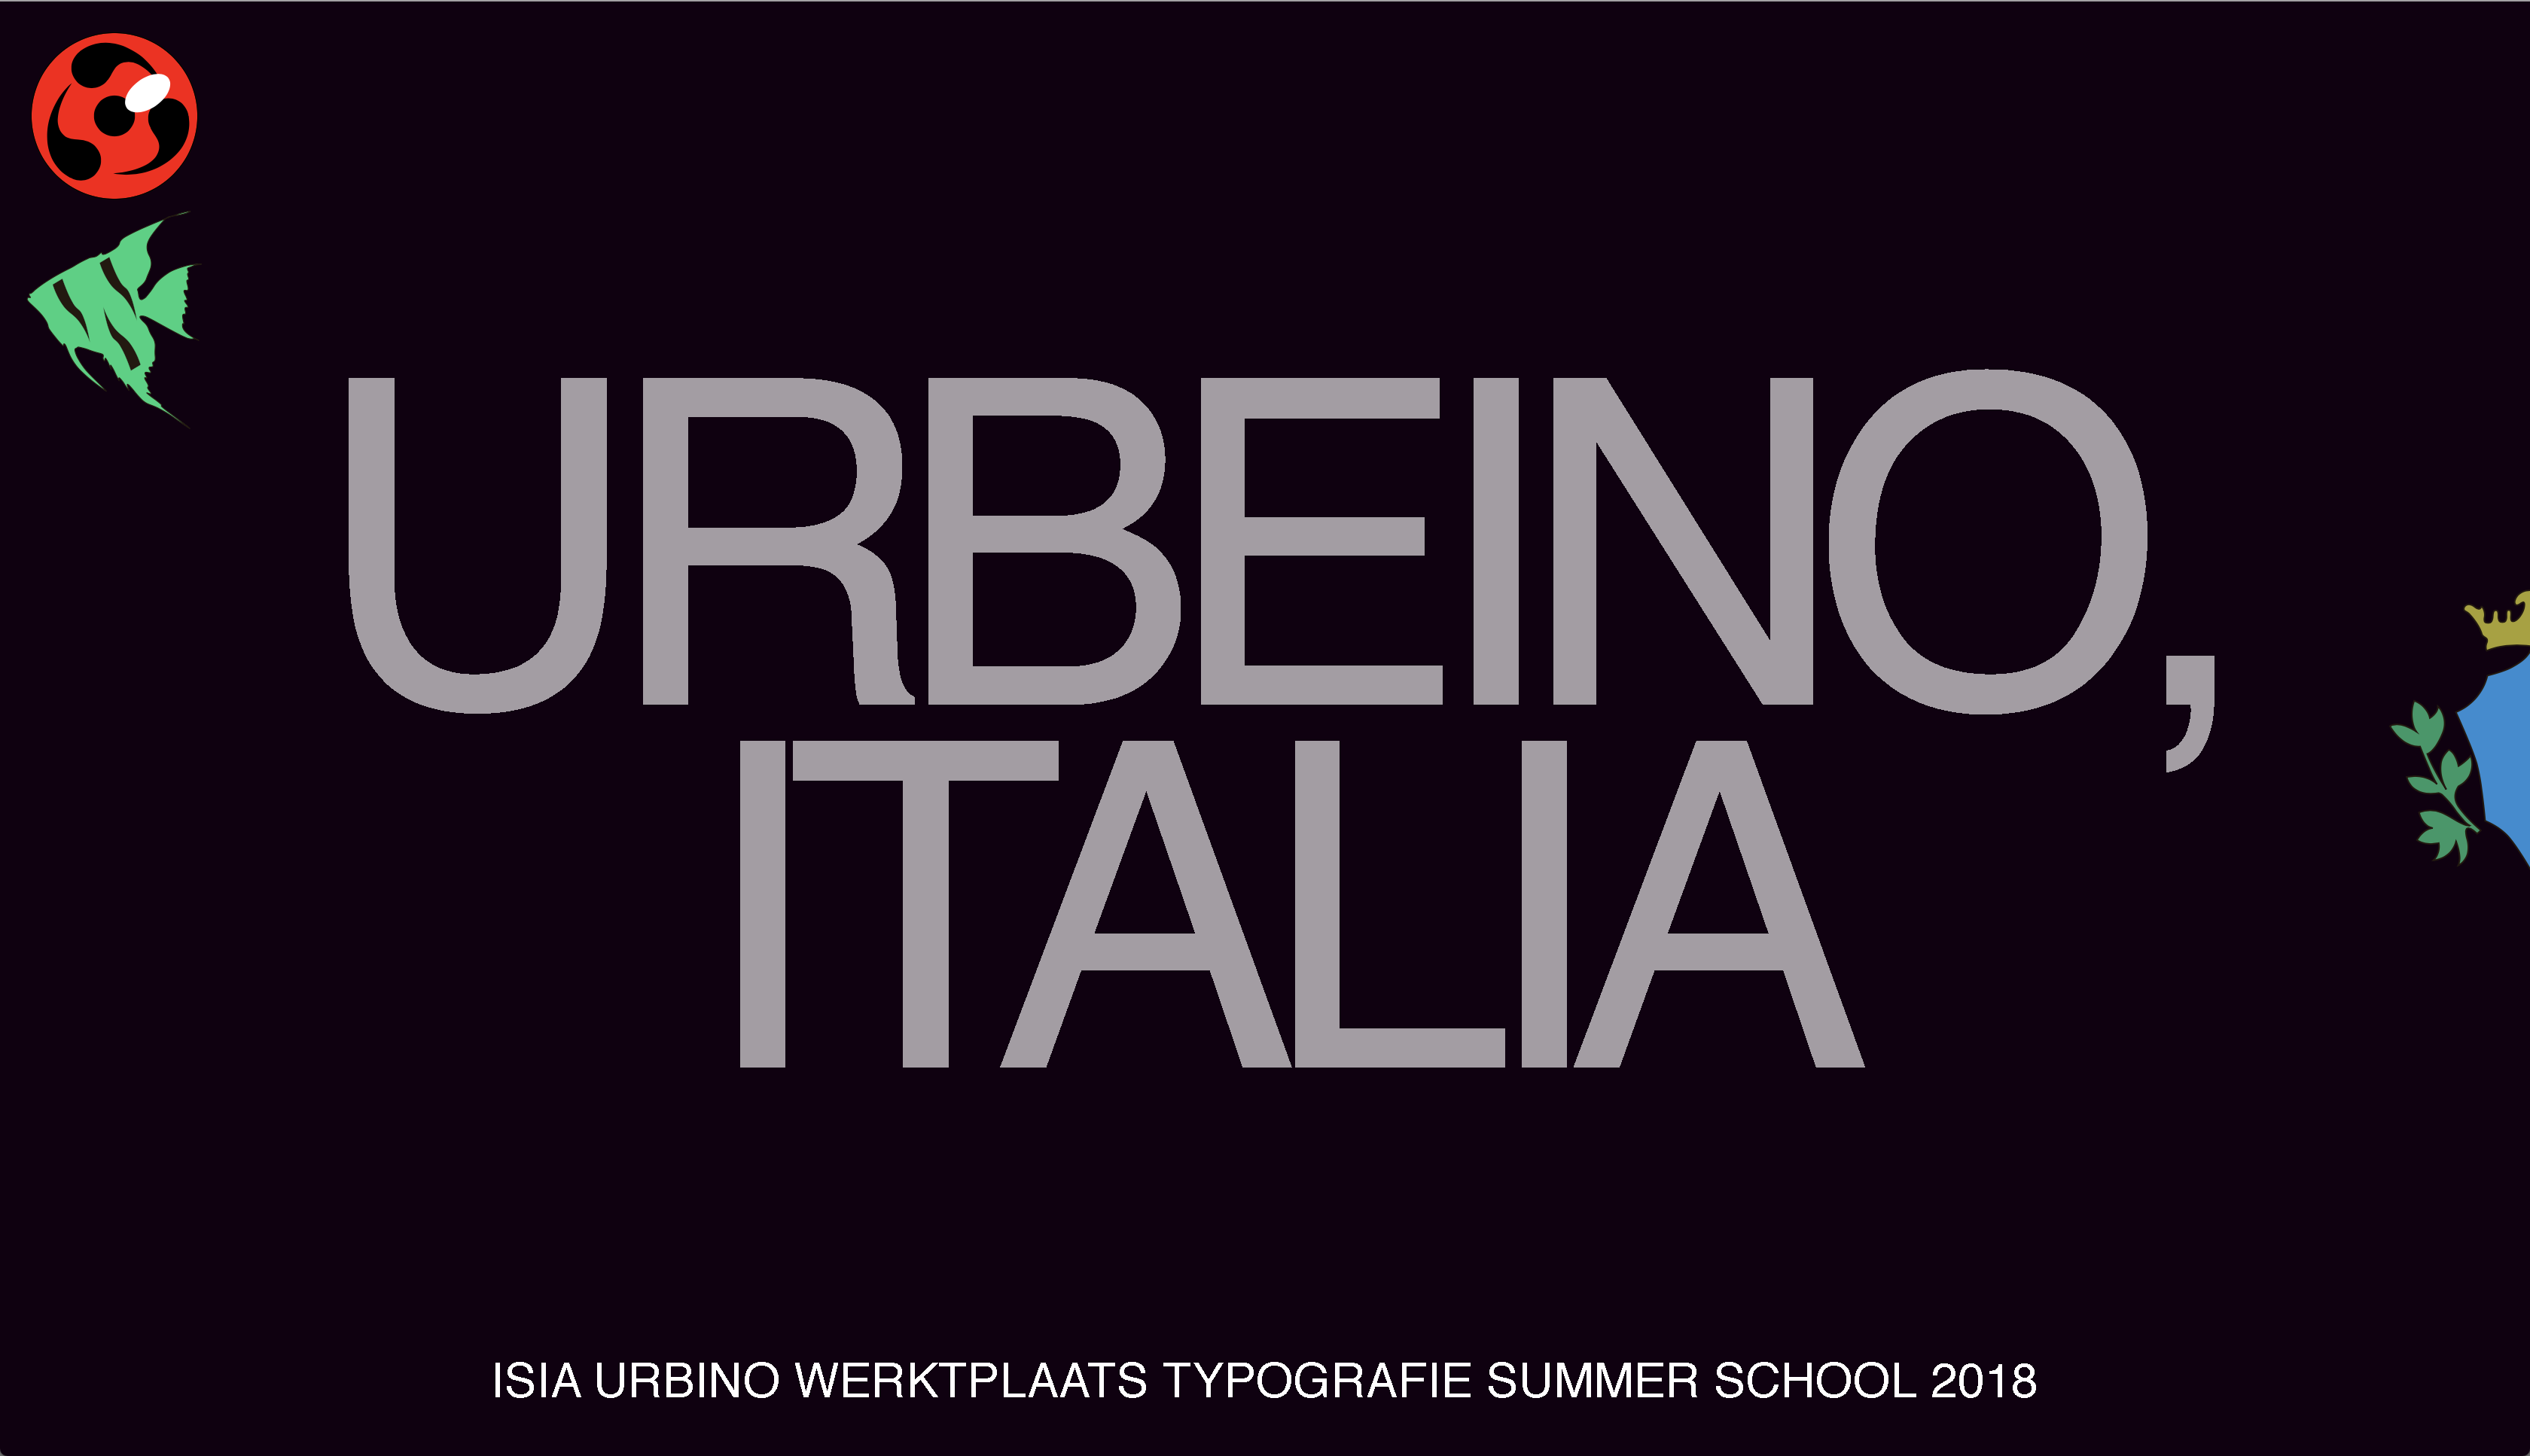 ISIA Urbino/Werkplaats Typografie Summer School 2018